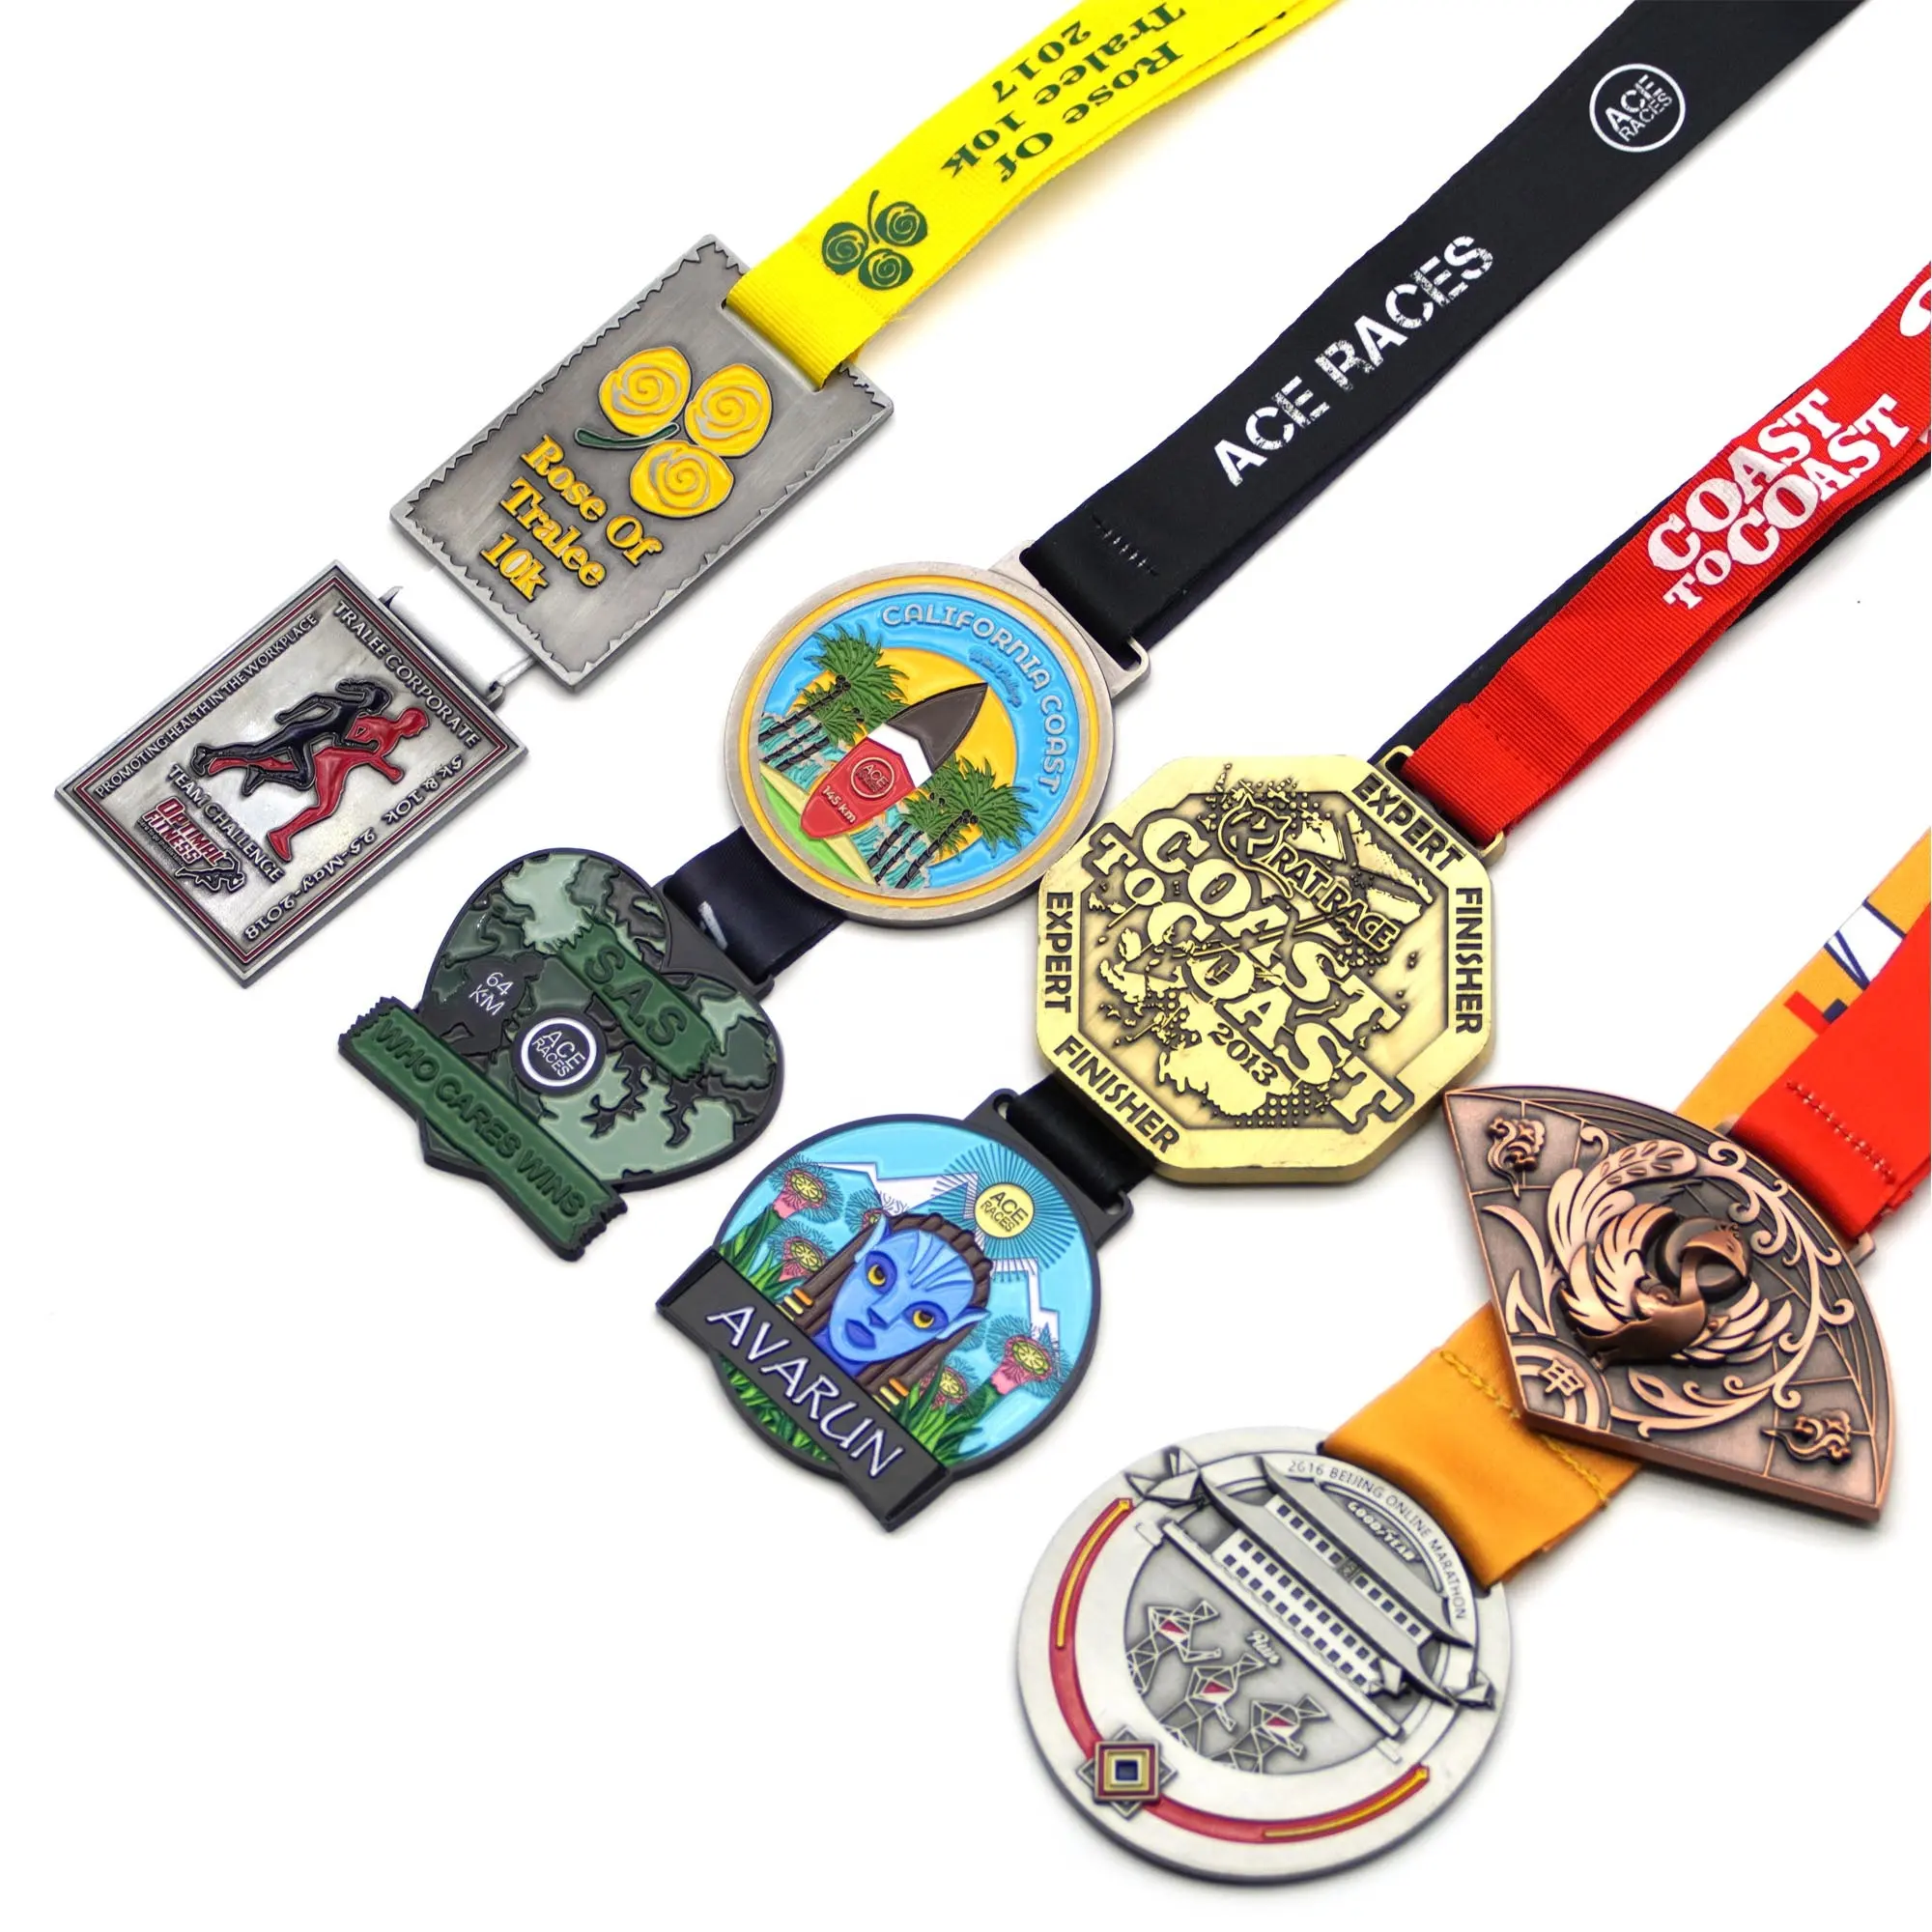 2023 Free Design Metall Marathon Karate Fußball Fußball Taekwondo Medaillen Award Plaque Benutzer definierte Medaillen Sport medaille und Trophäen